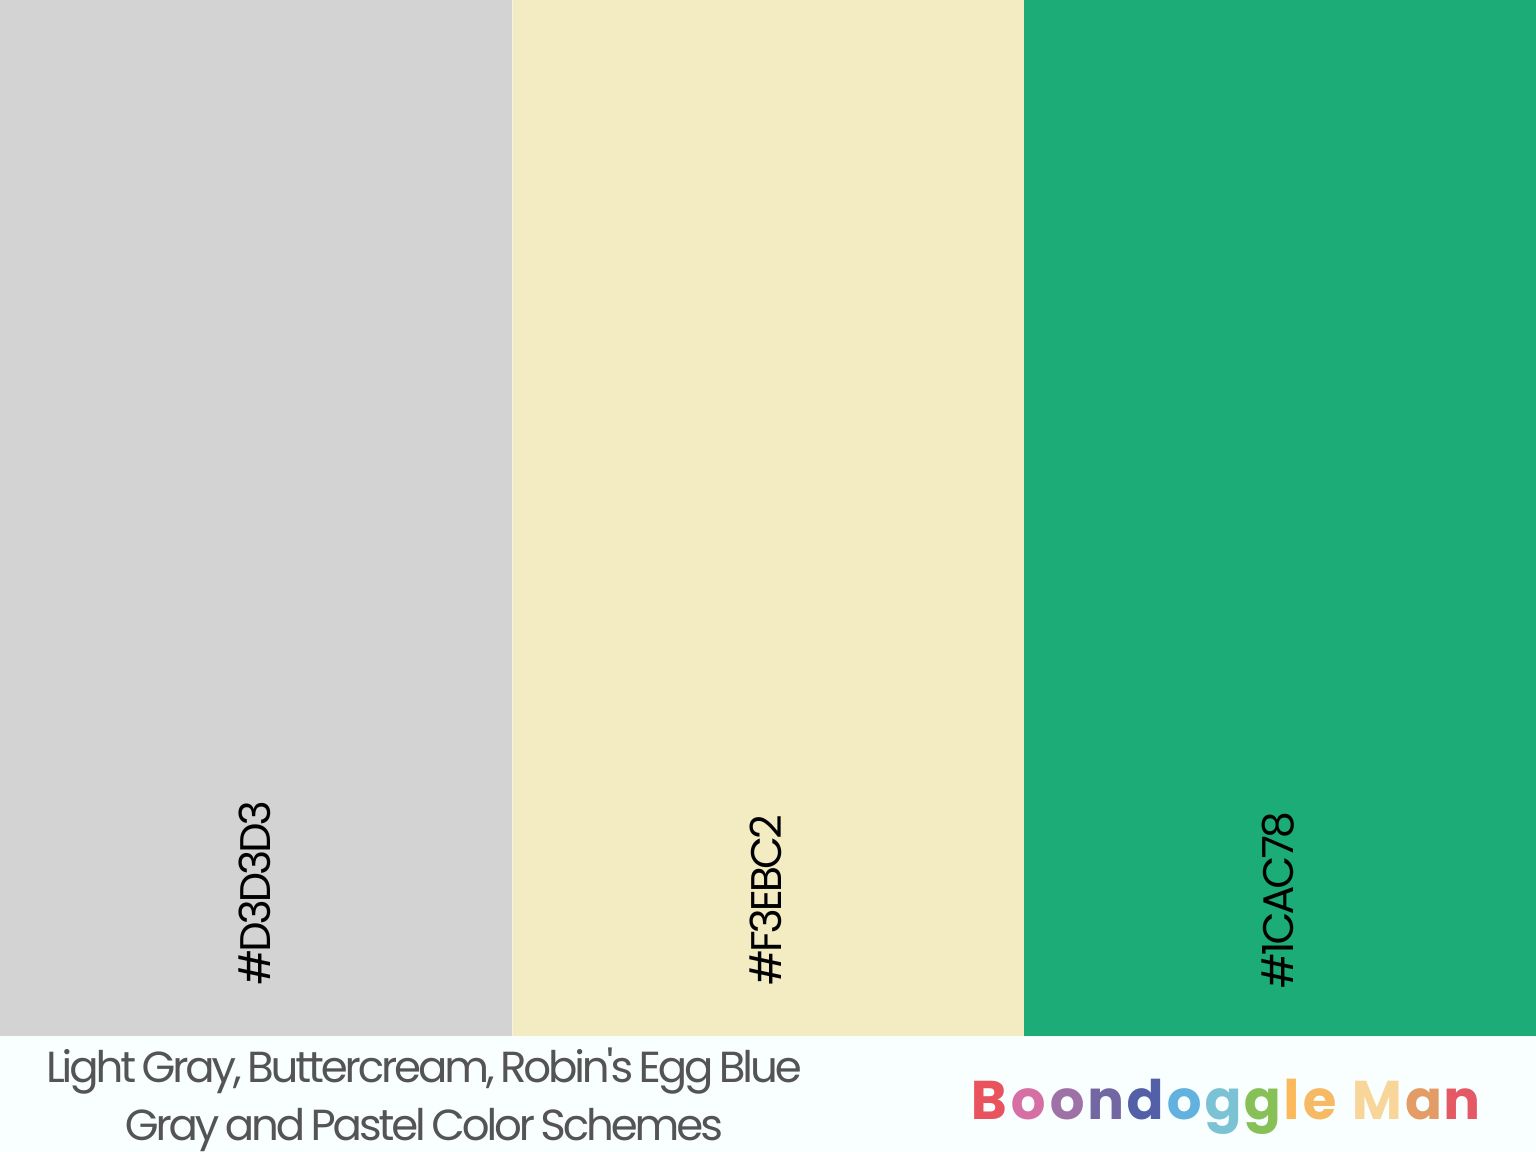 Light Gray, Buttercream, Robin's Egg Blue